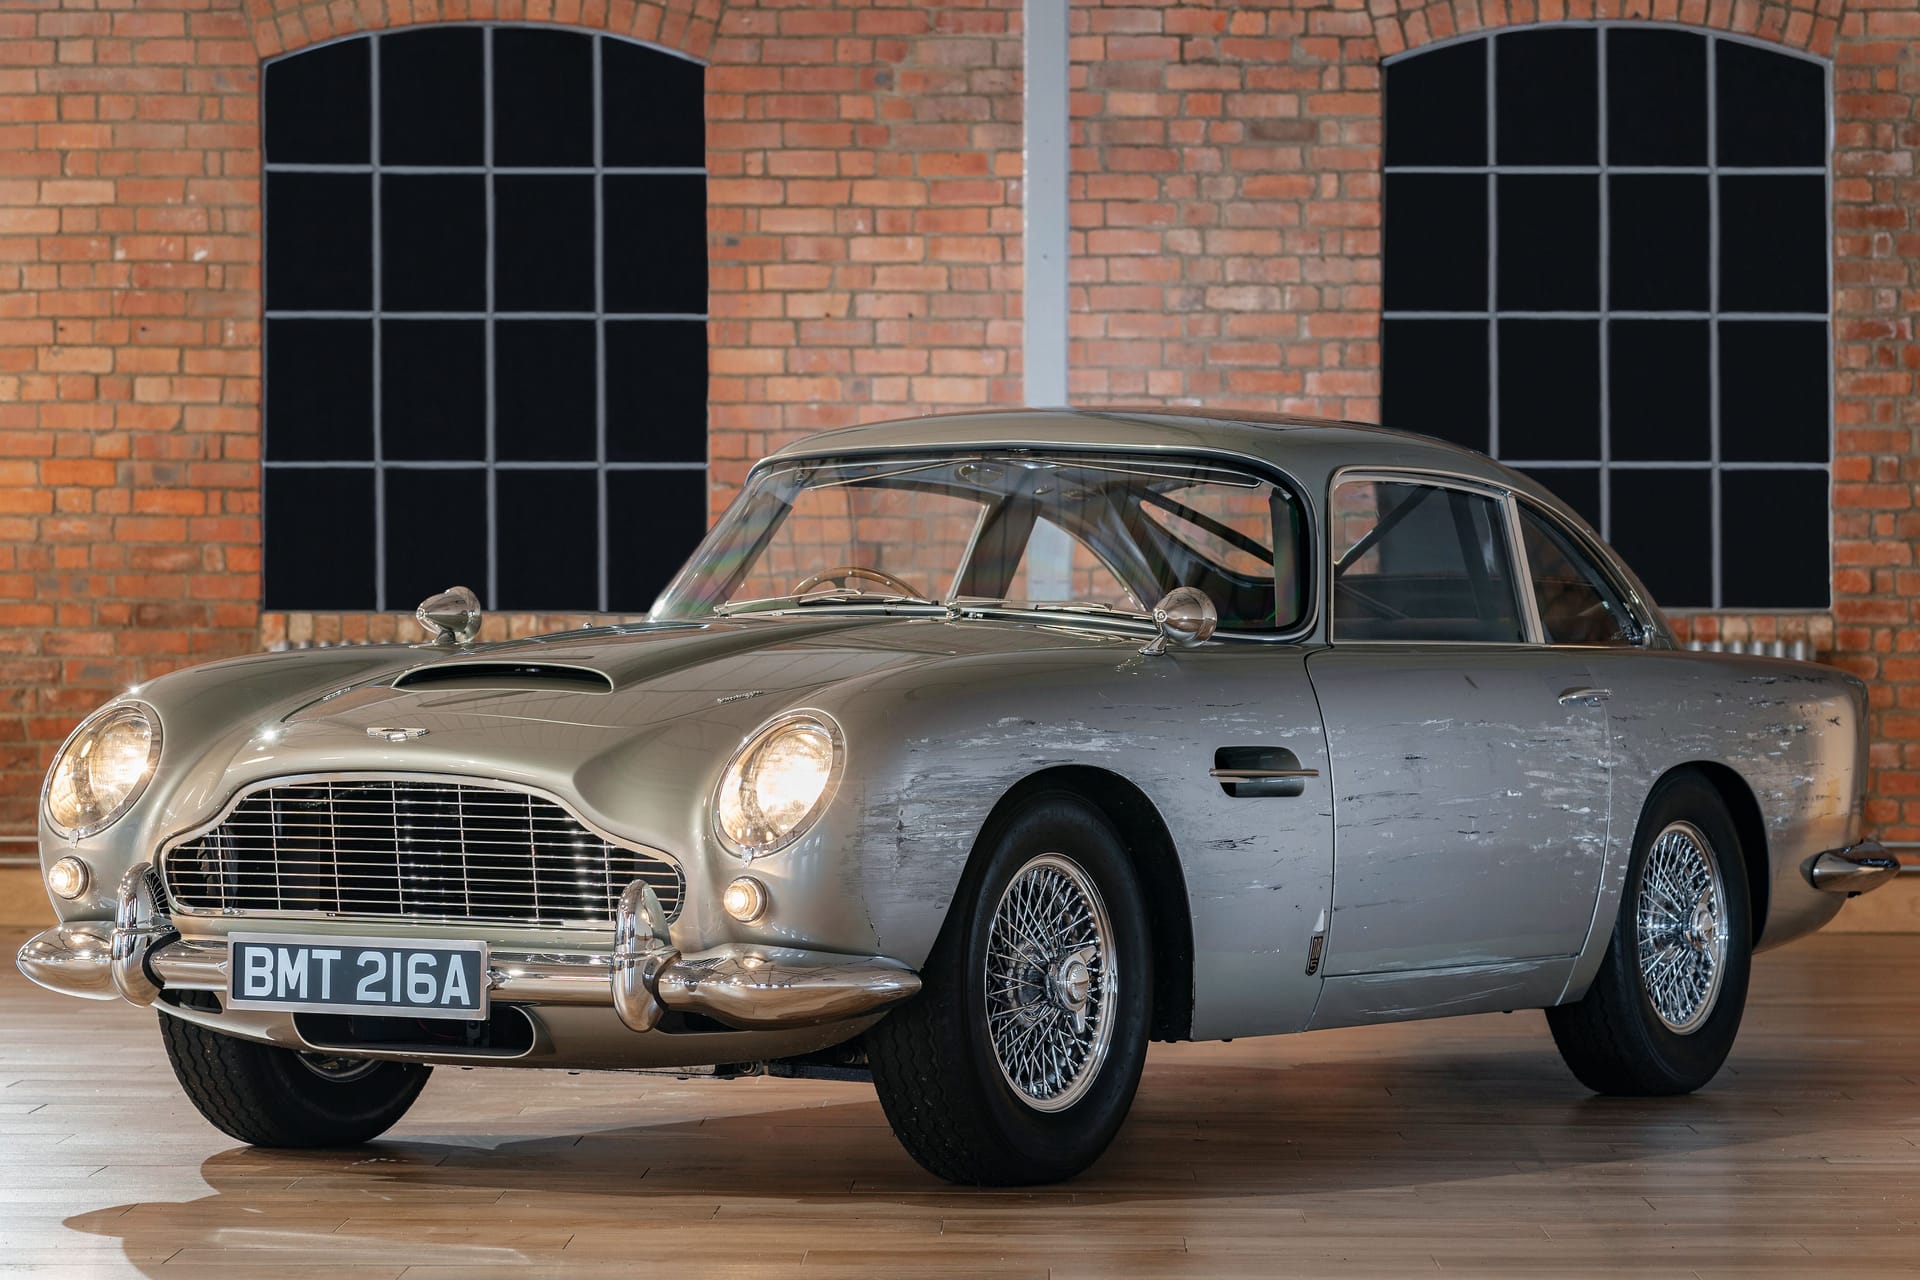 Insgesamt sieben James-Bond-Stuntautos sind beim Auktionshaus Christie's gelistet. Die Versteigerung ist am 28. September. Mit dabei ist diese Replica des legendären Aston Martin DB5, der 1964 in "Goldfinger" seinen großen Auftritt hatte.